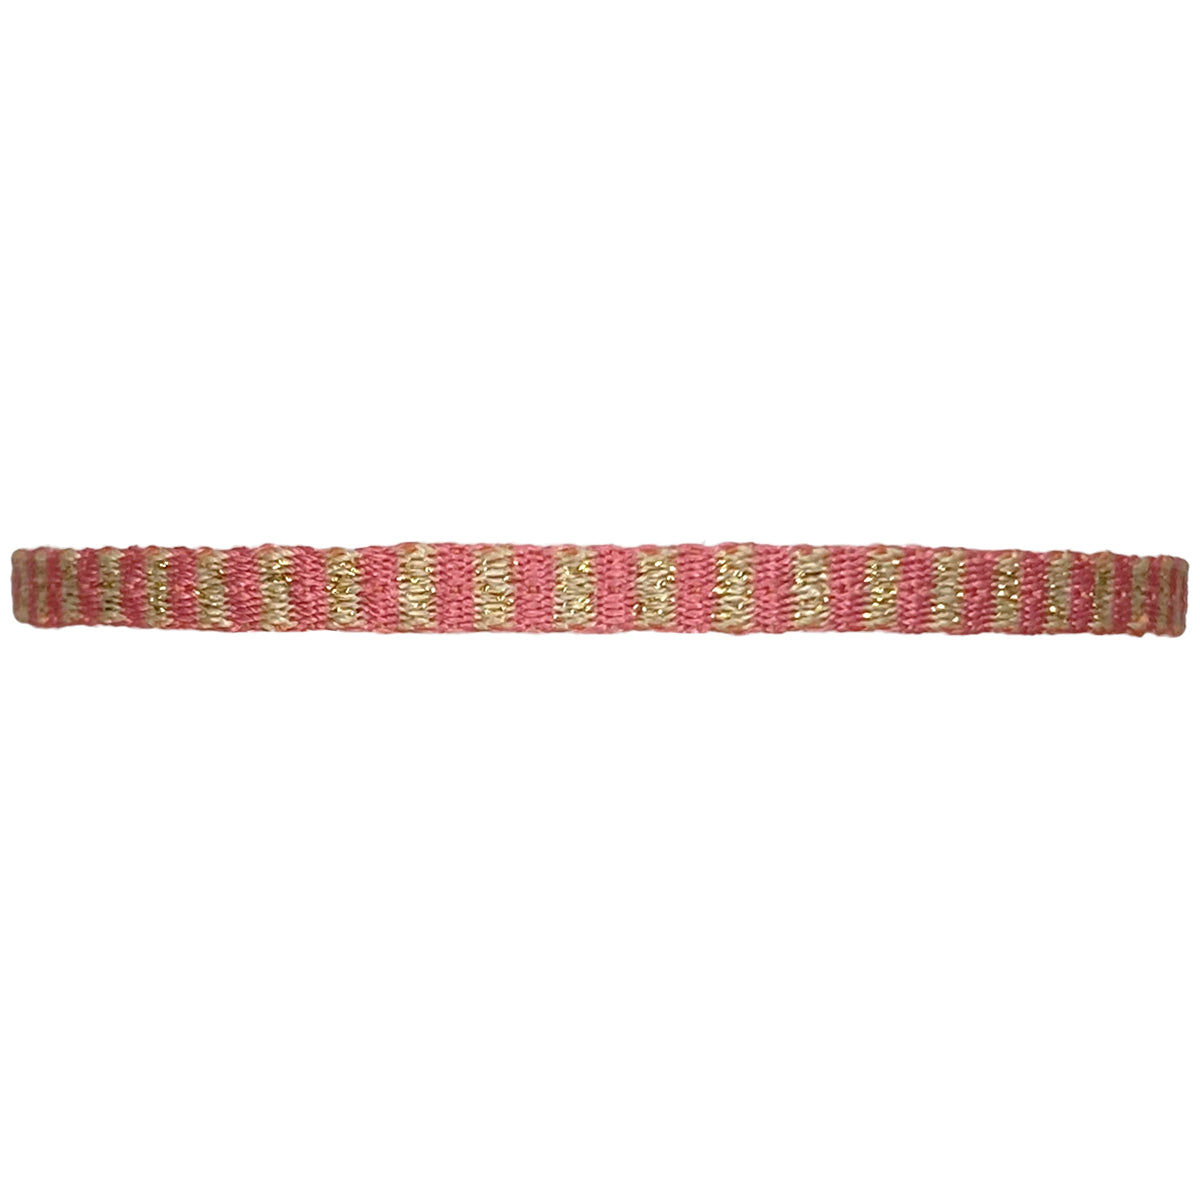 Basic Handmade Bracelet in Rose Gold Tones